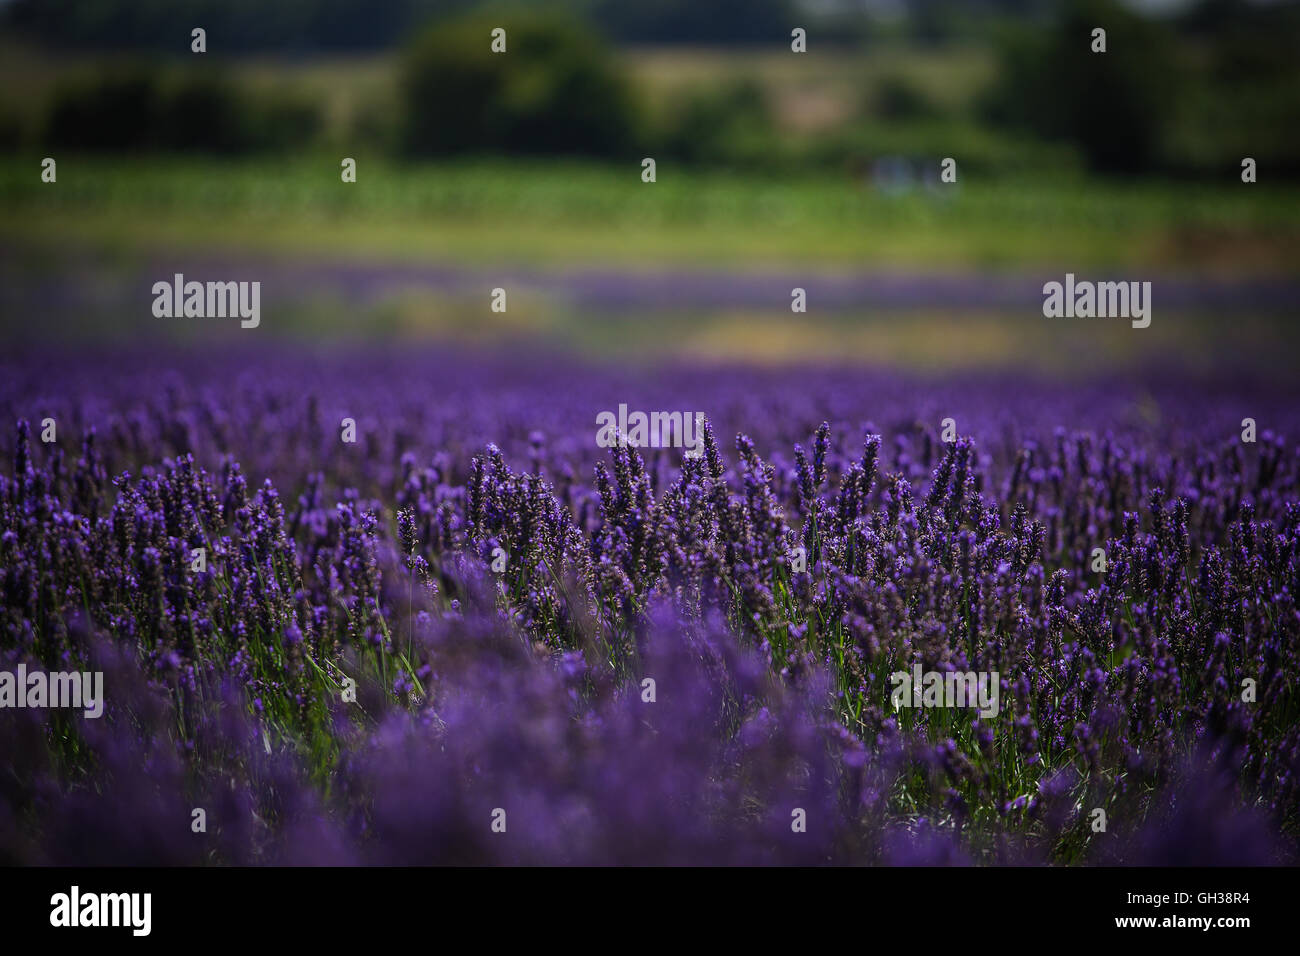 Purple Fields, lavender fields Stock Photo